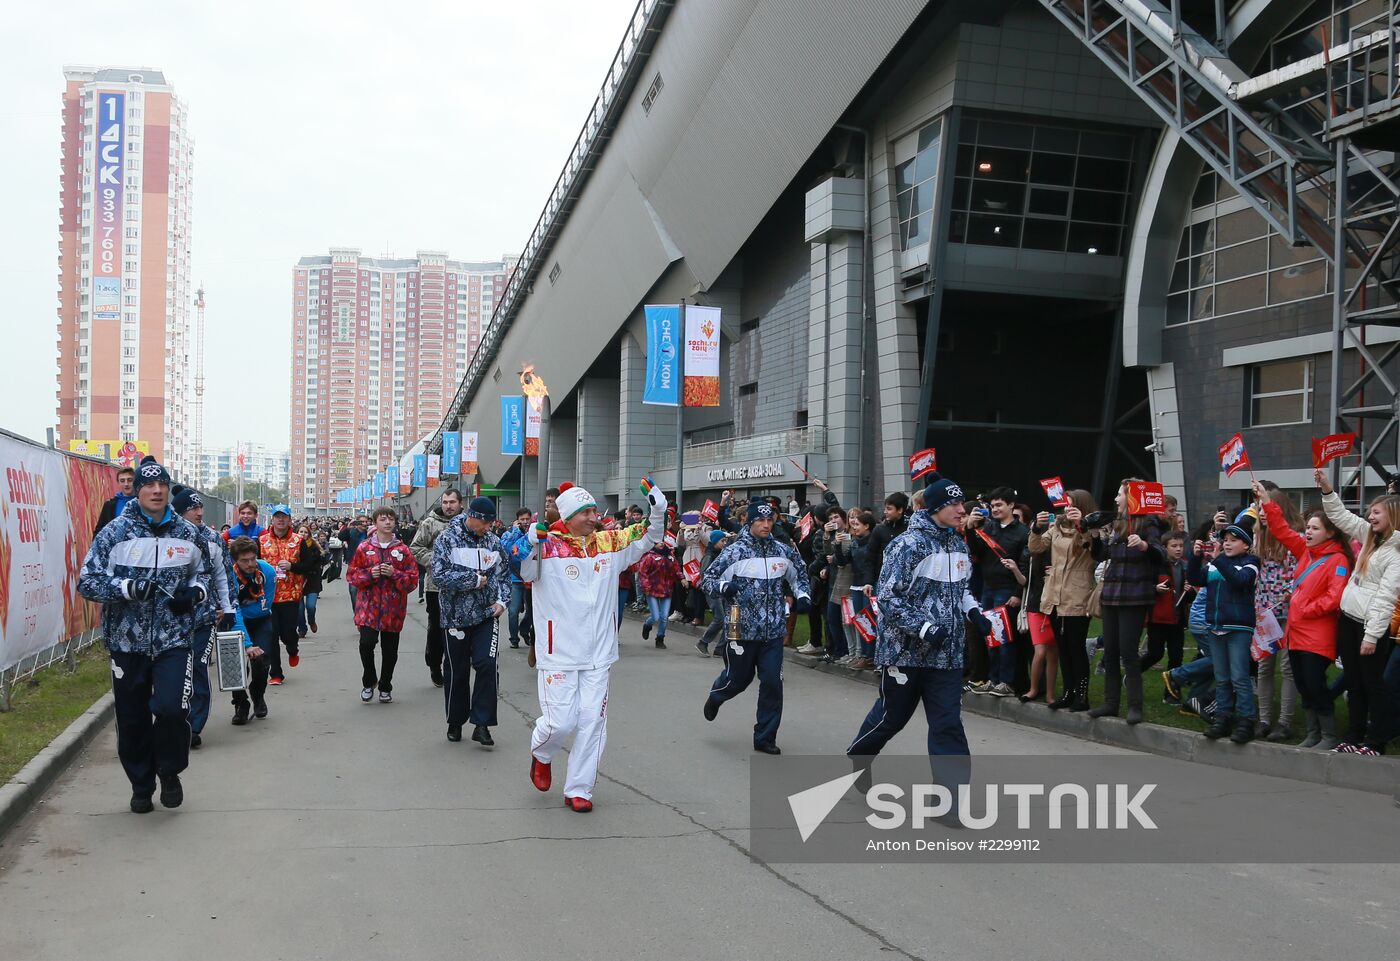 Sochi 2014 Olympic torch relay. Moscow Region